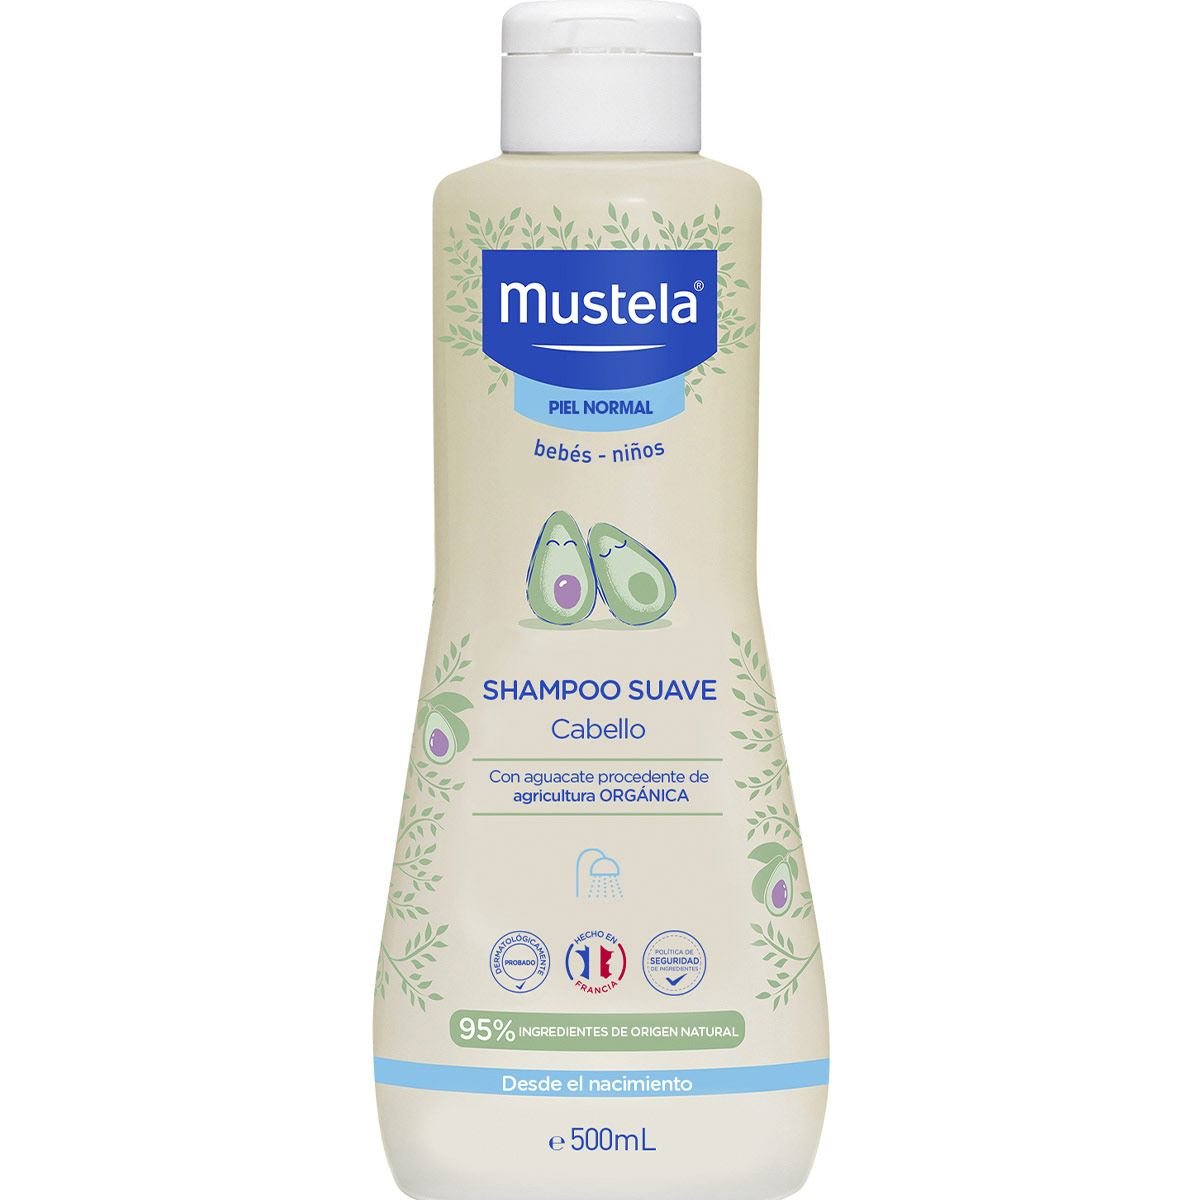 Mustela Shampoo Suave para bebés y niños con Piel Normal 500ml